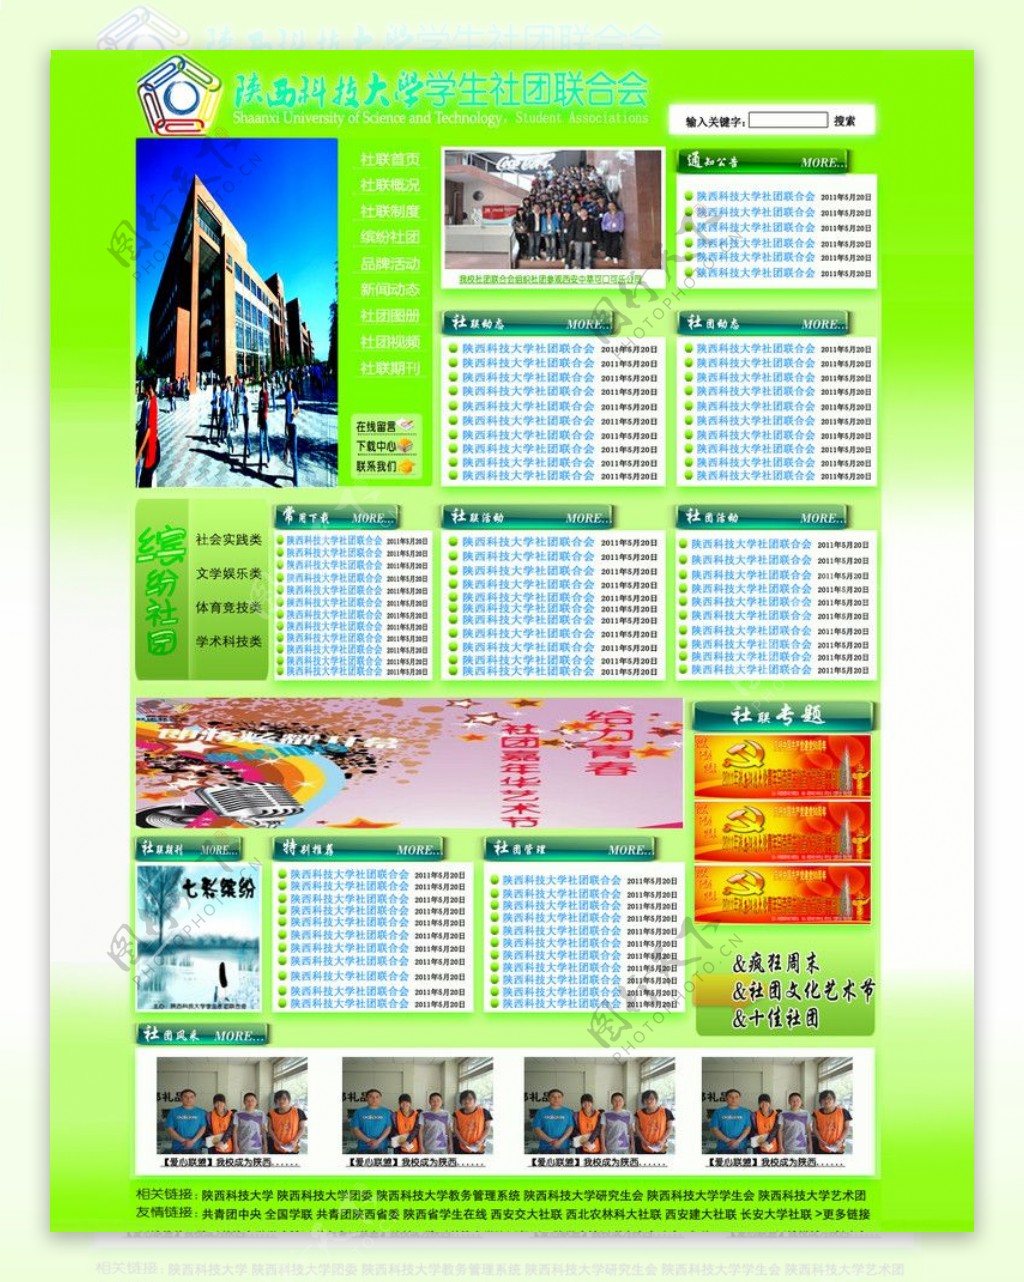 陕西科技大学学生社团联合会网站图片